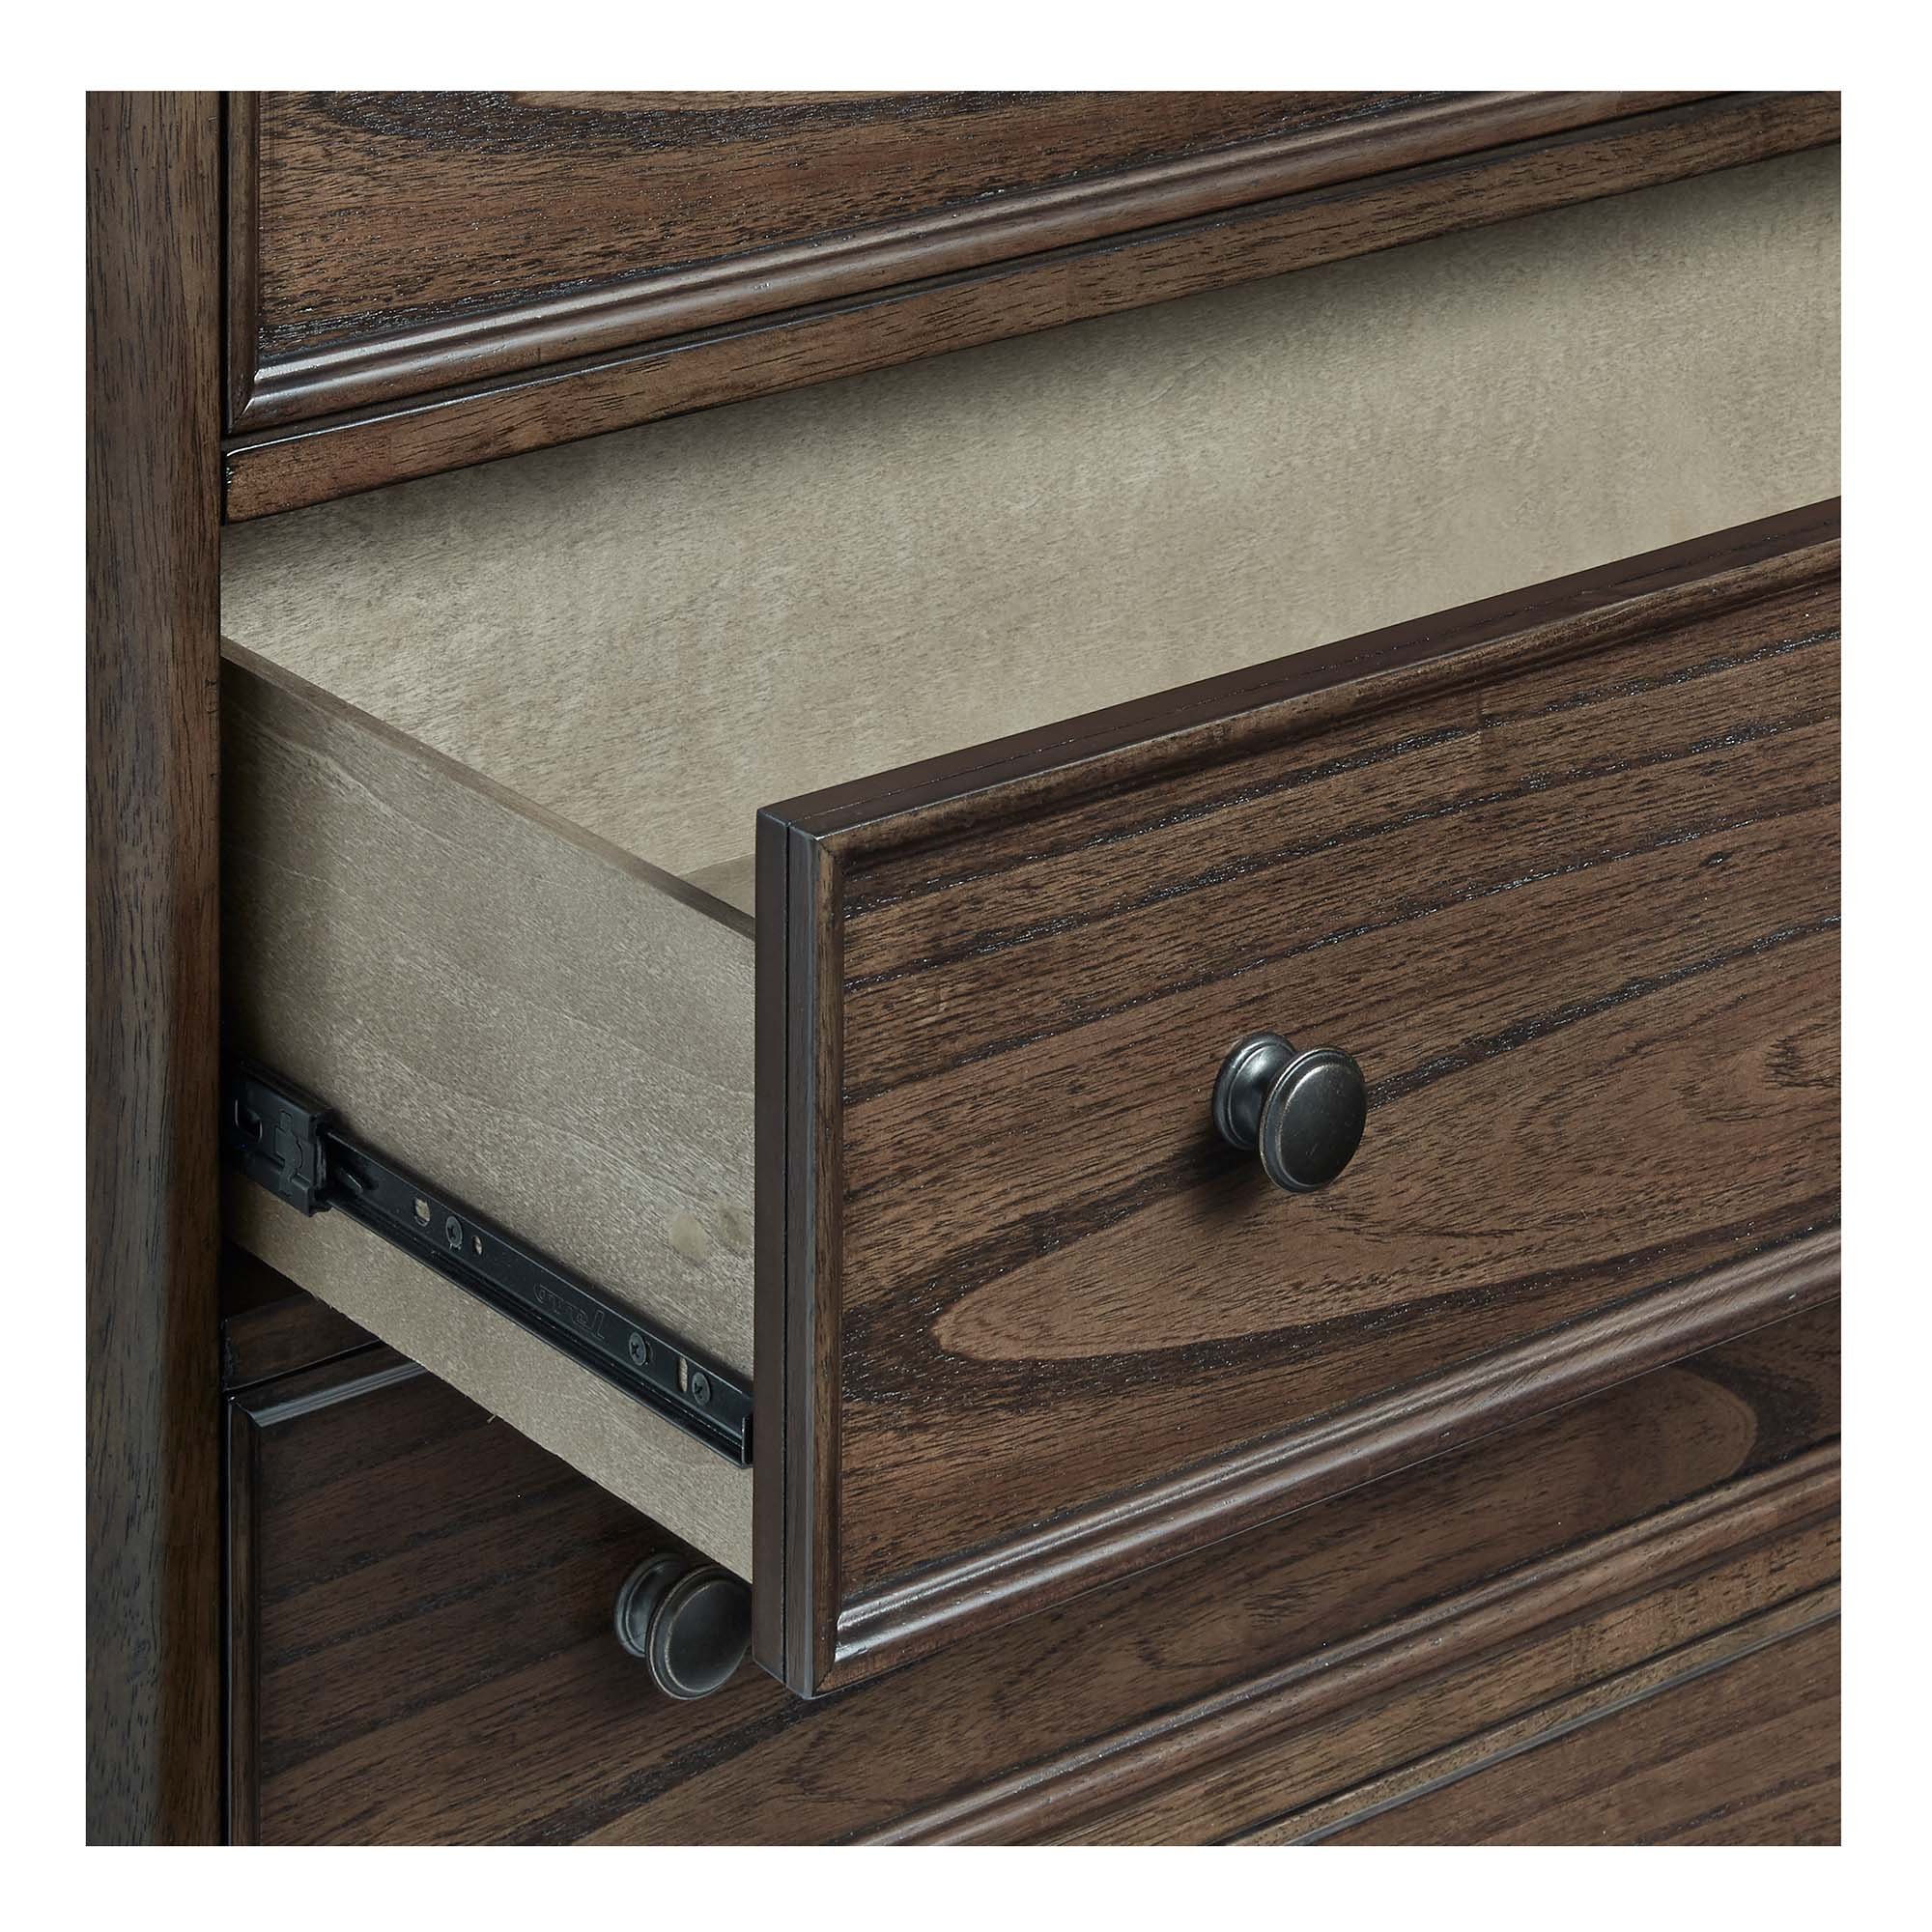 B122 drawer detail.jpg